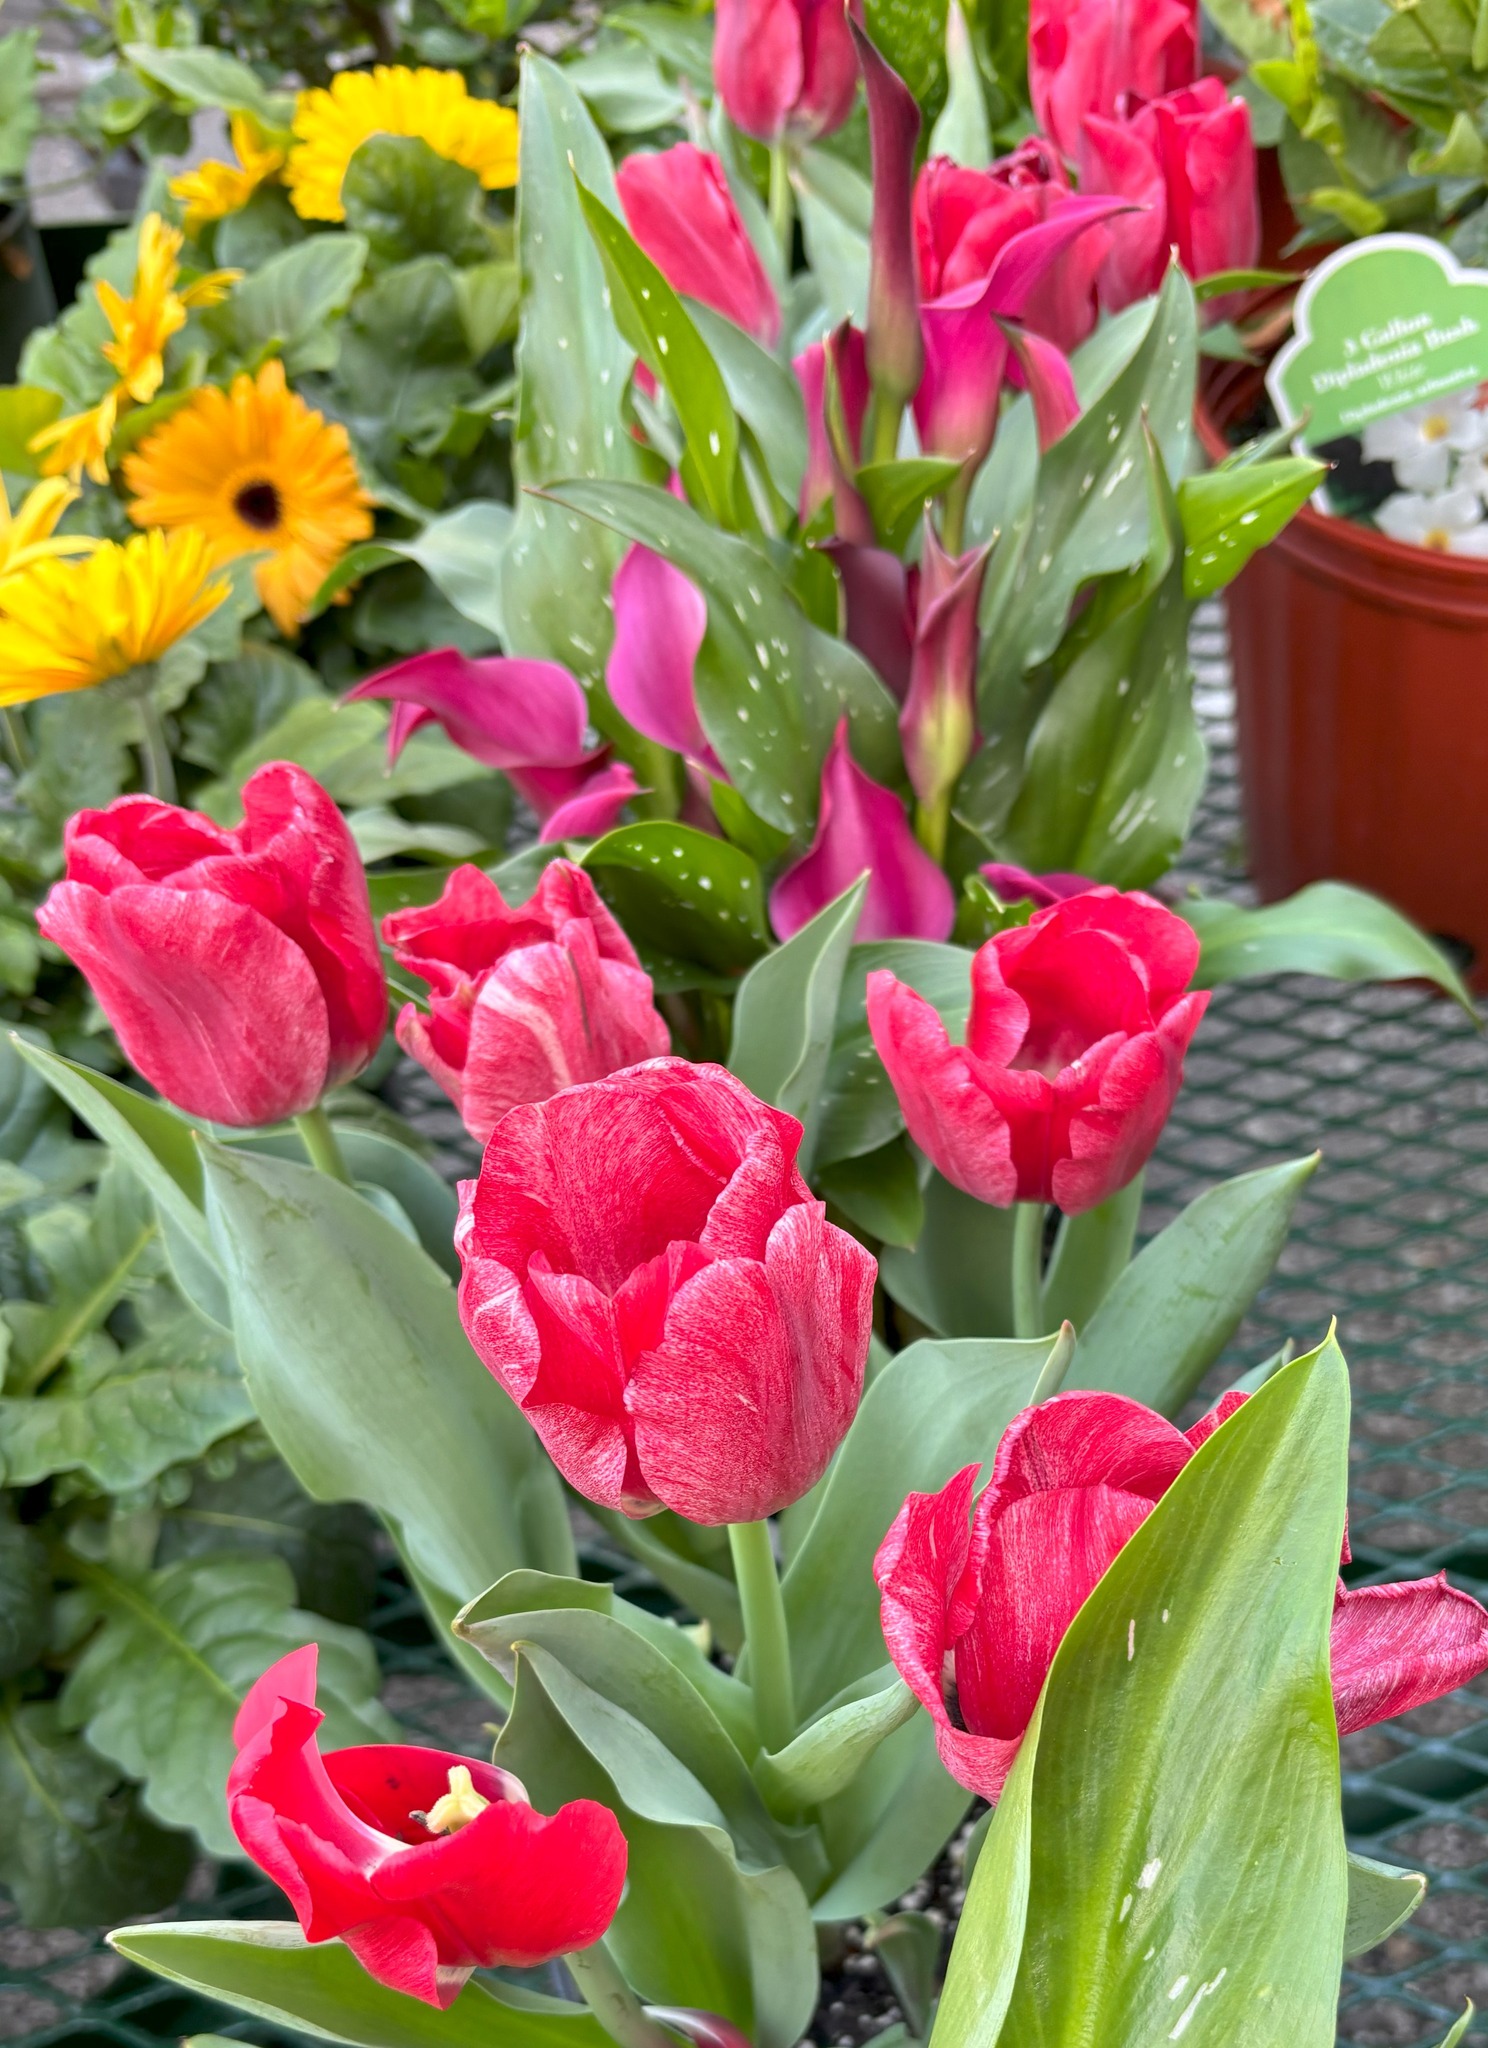 Baileys beautiful tulips